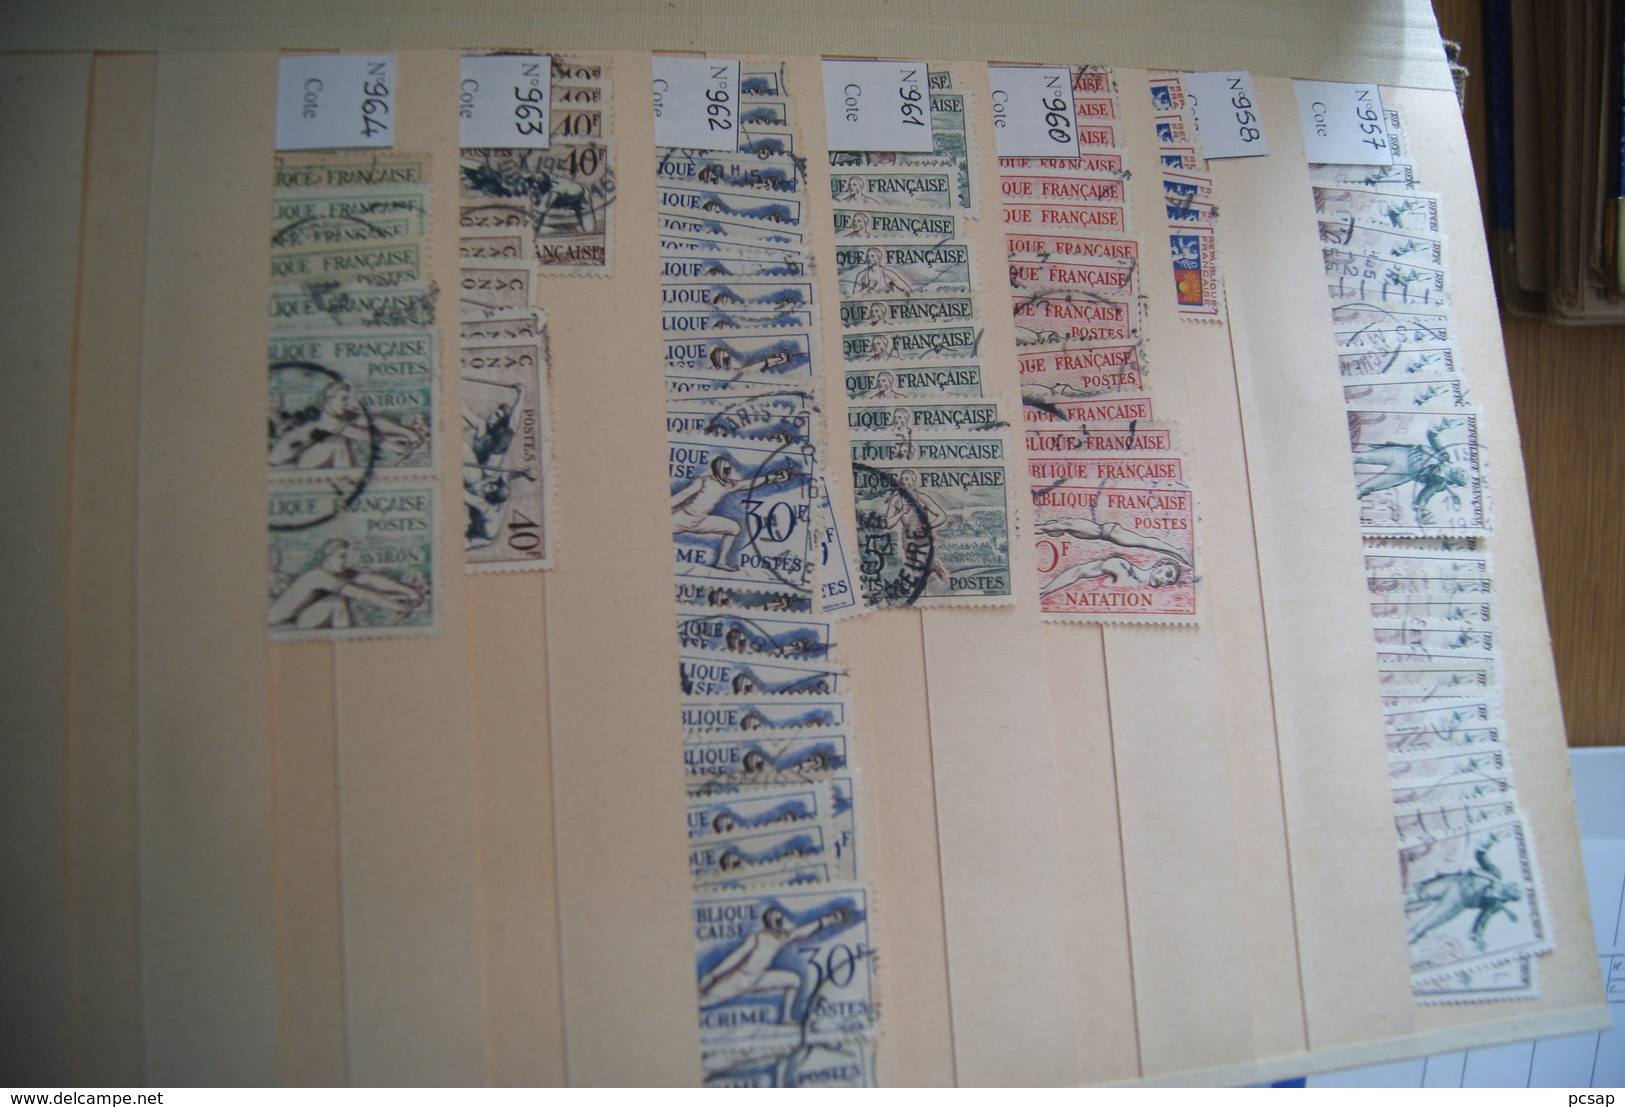 Très gros lot de timbres oblitérés de France du n° 75 au n°660 (Livraison gratuite)